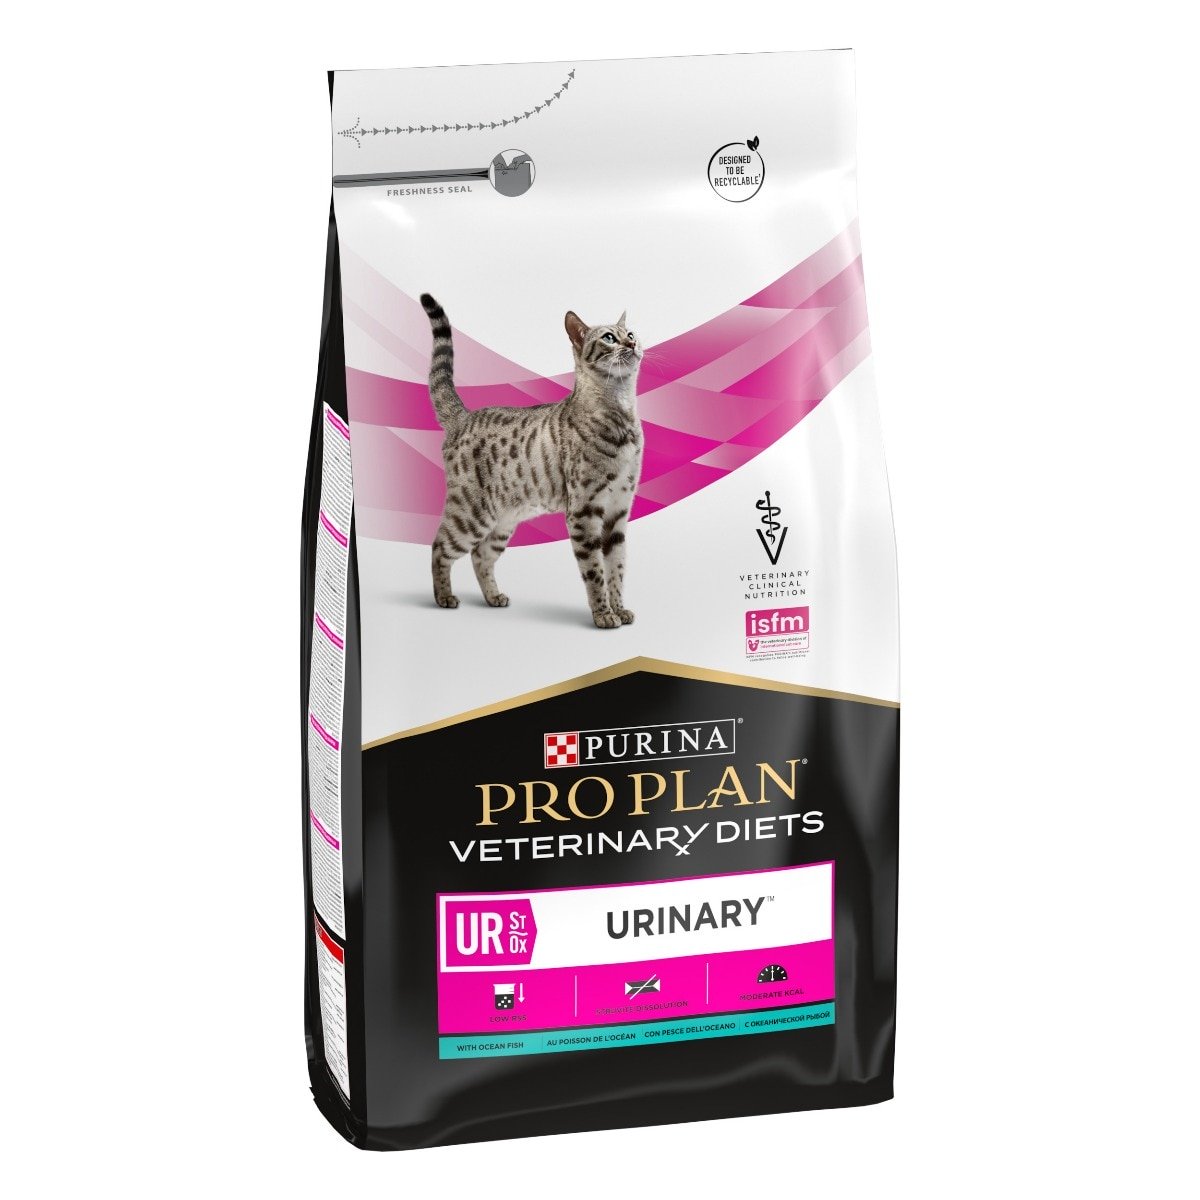 Purina - Crocchette al Salmone per Gatti con Patologie alle Vie Urinarie Veterinary Diets Feline Urinary